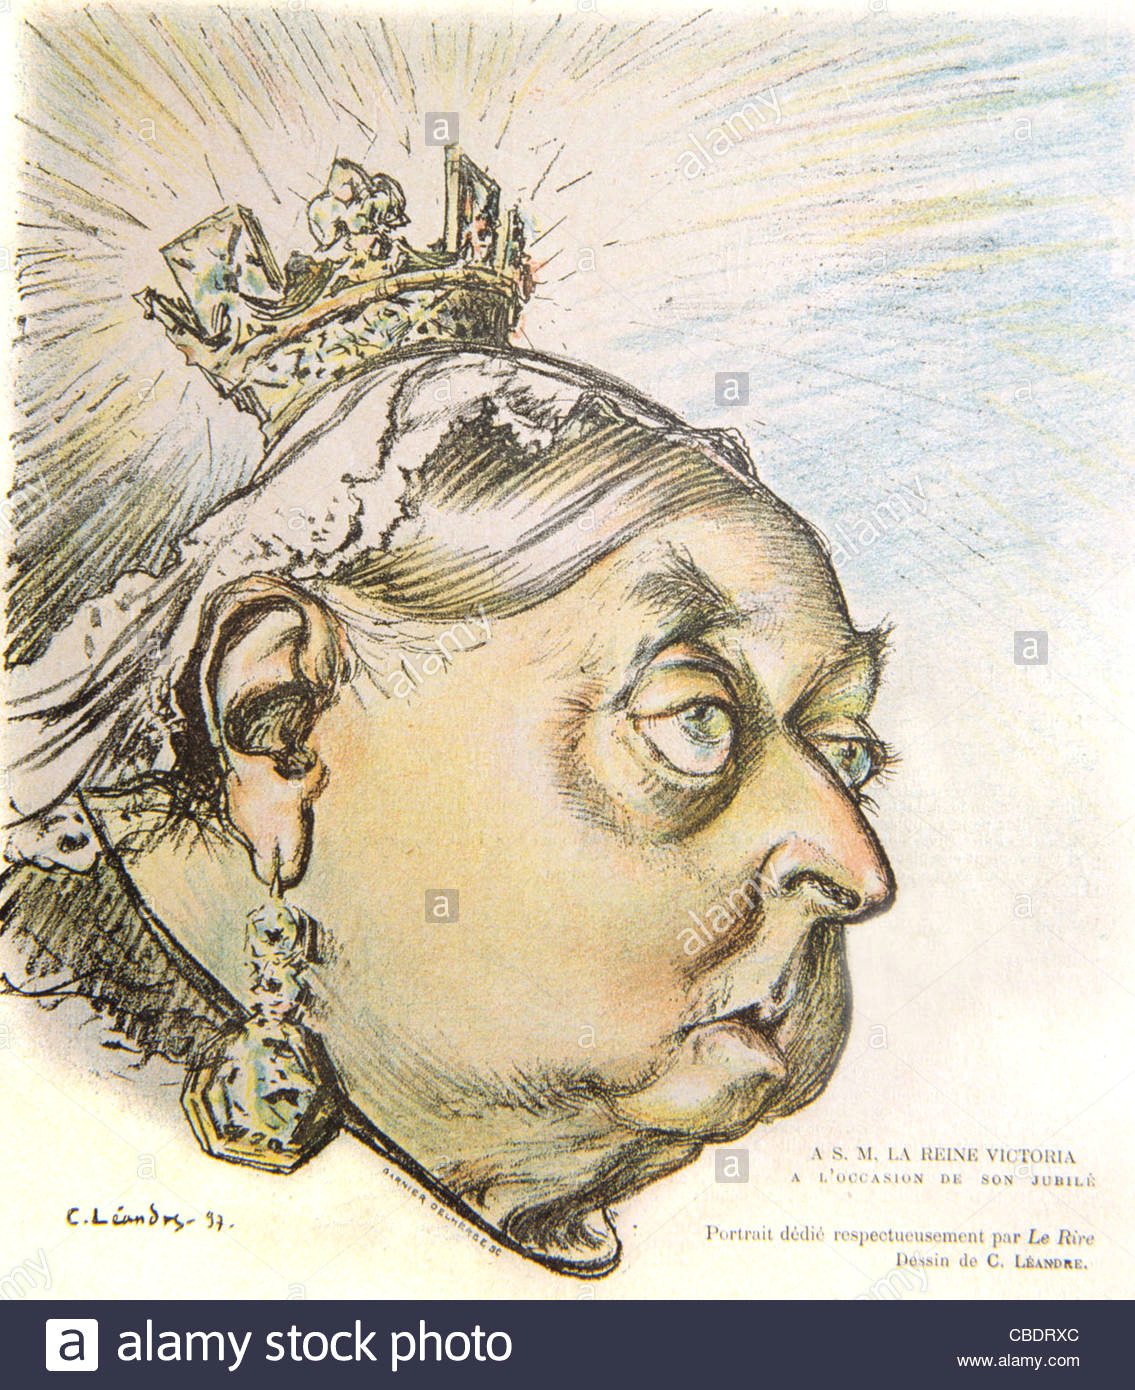 Easy Drawing Of Queen Victoria Queen Victoria Cartoon Stock Photos Queen Victoria Cartoon Stock